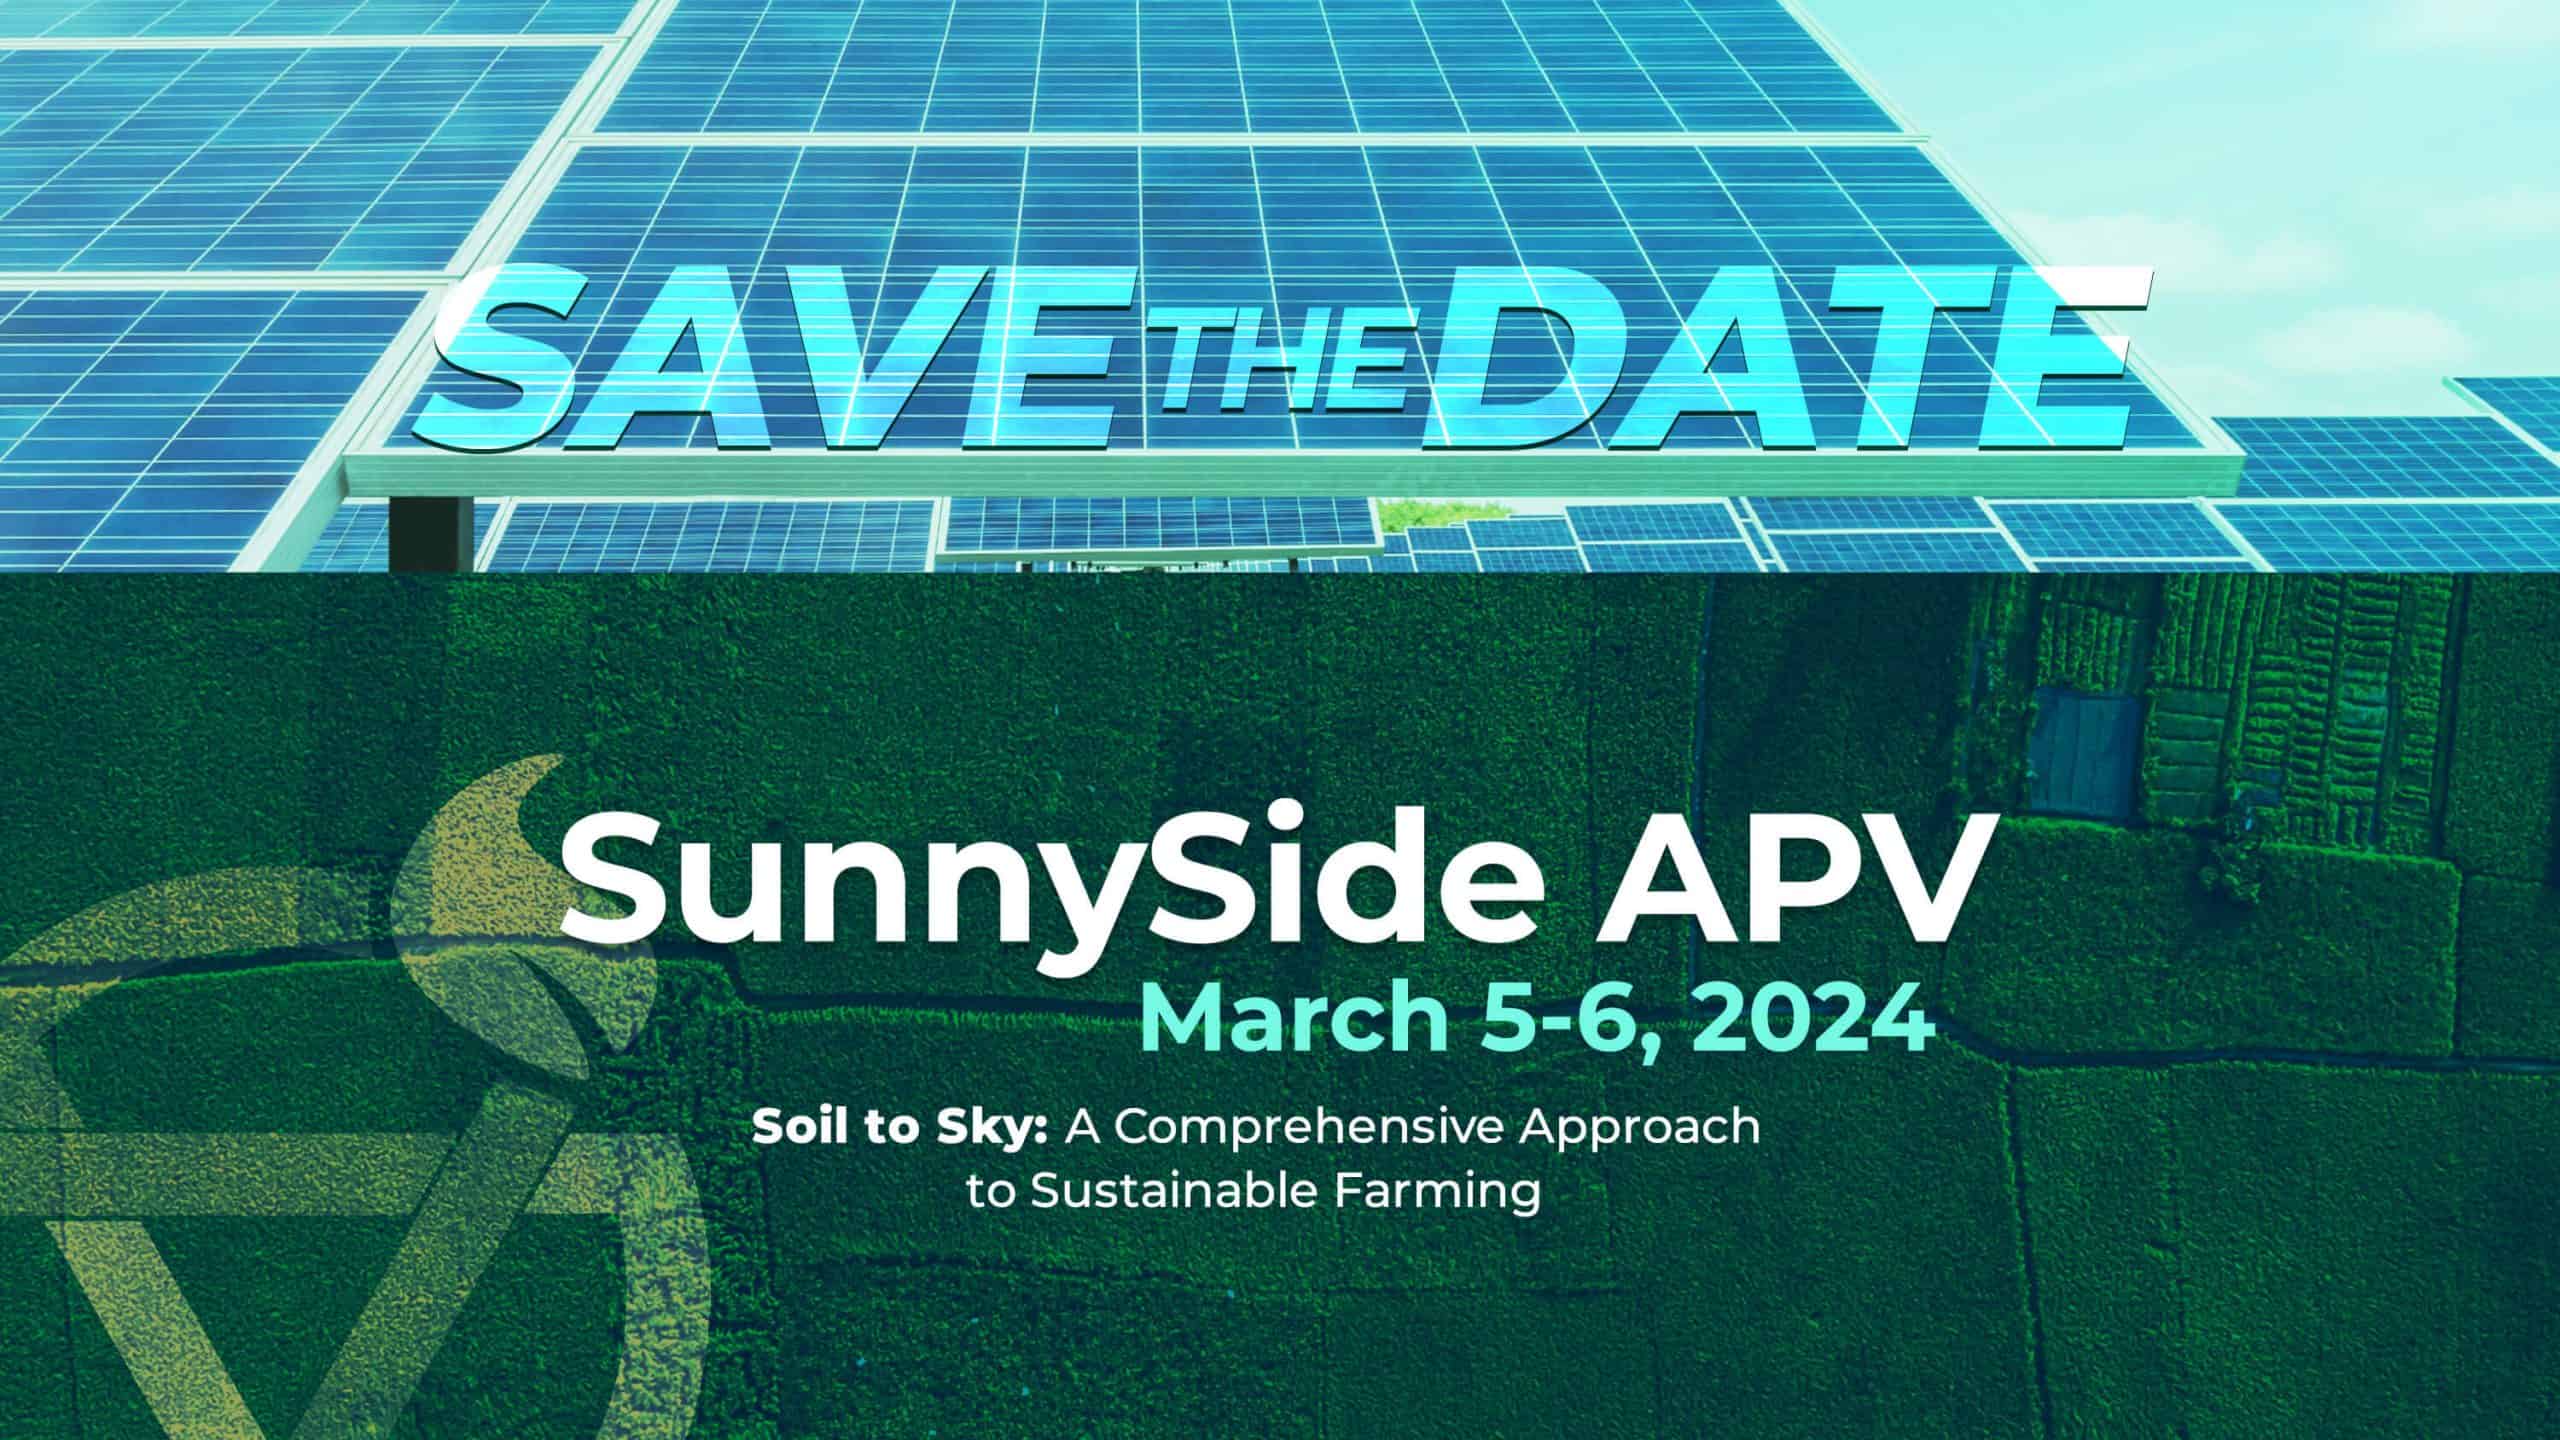 SunnySide APV Summit 2024